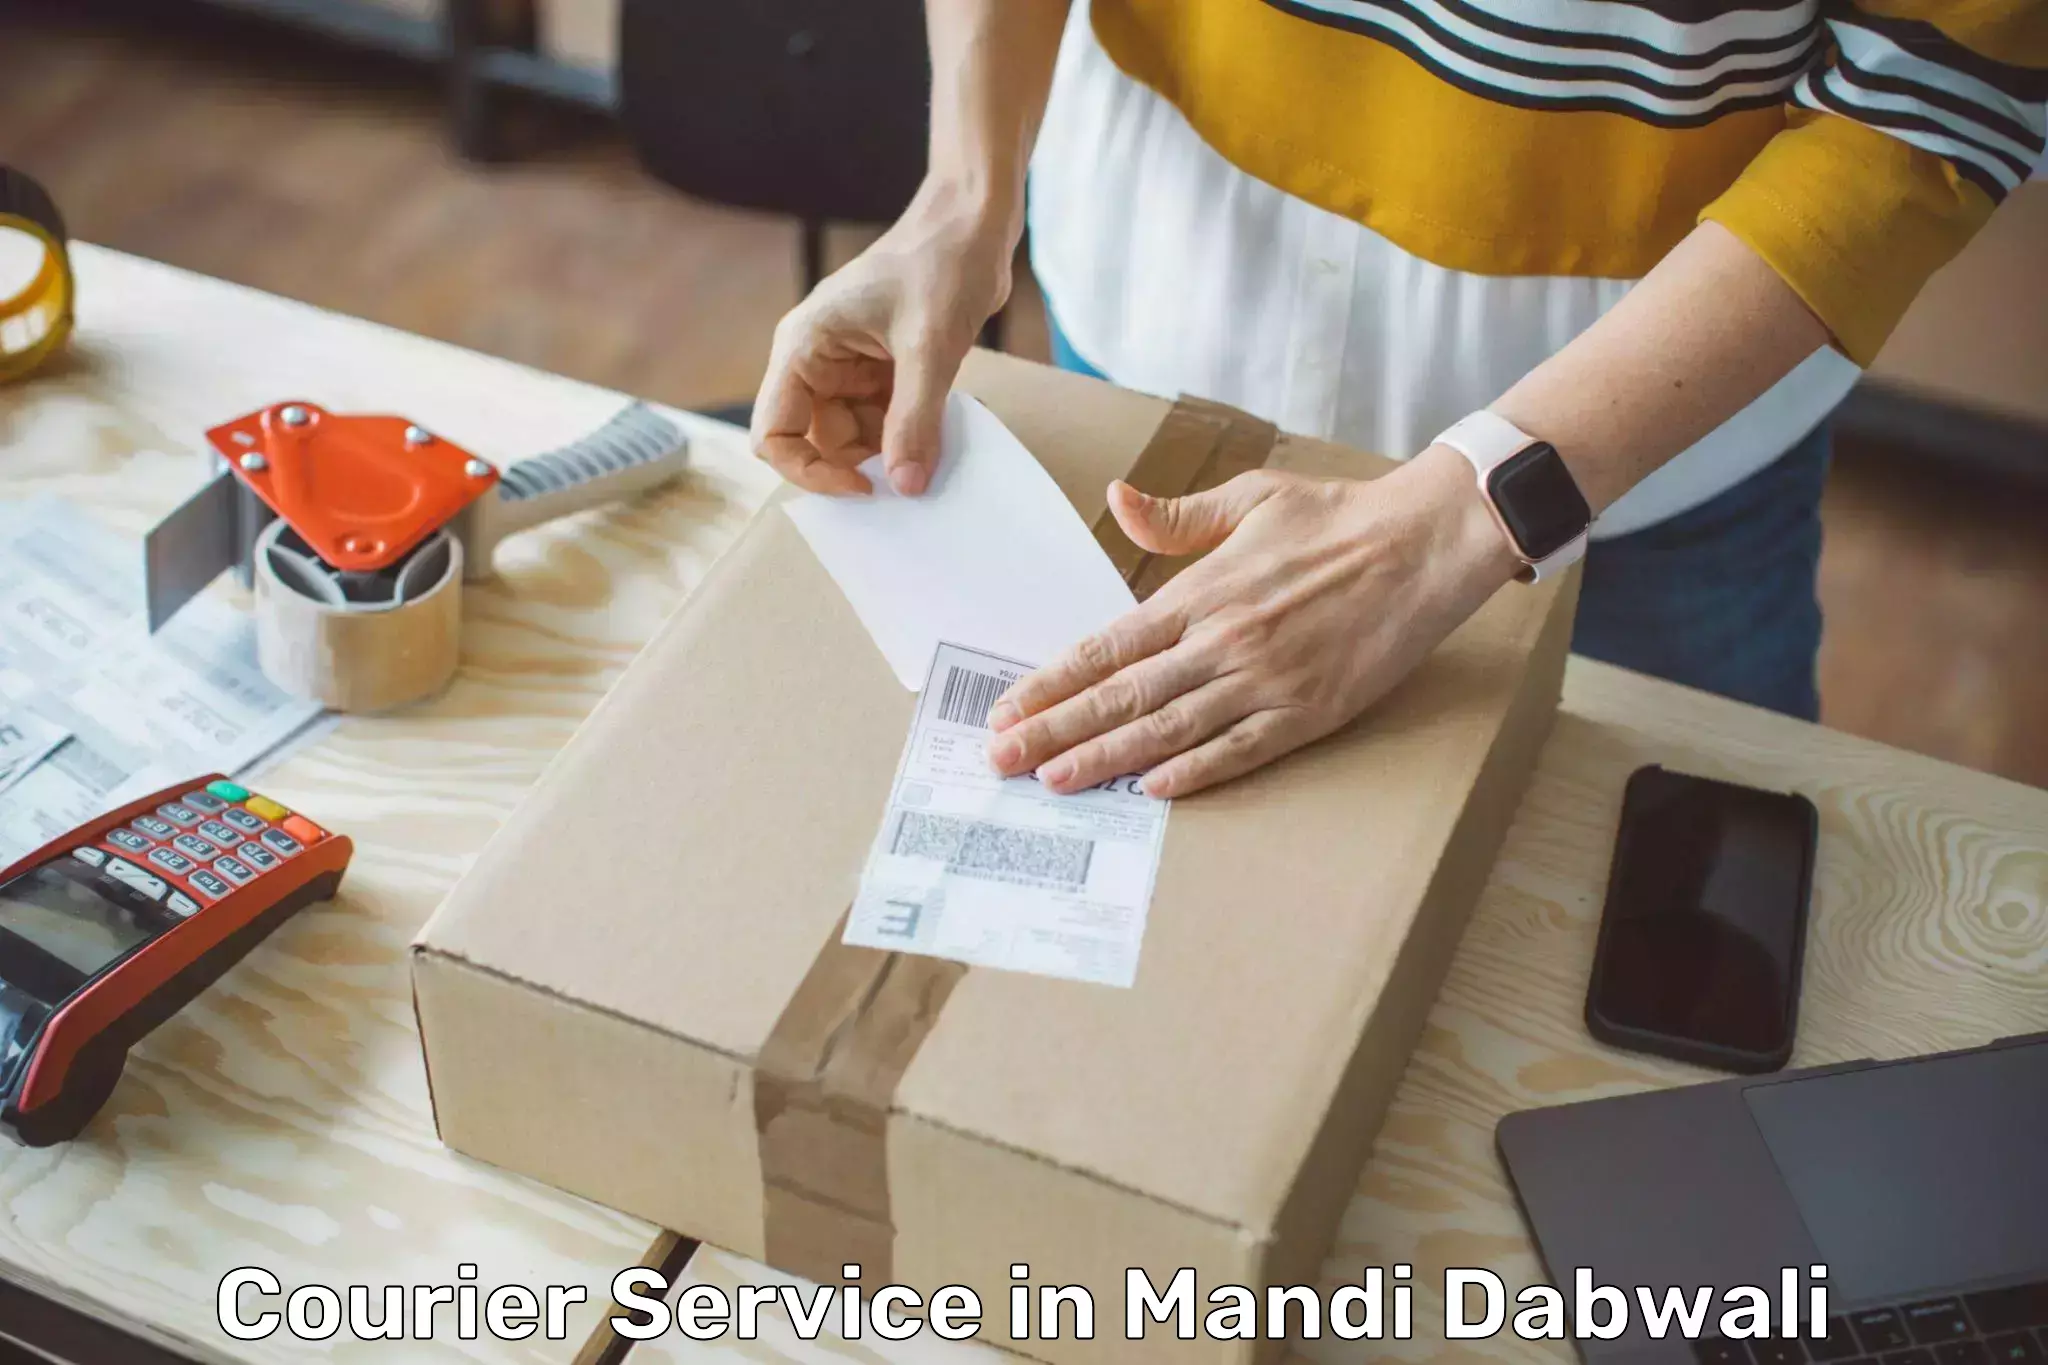 E-commerce fulfillment in Mandi Dabwali